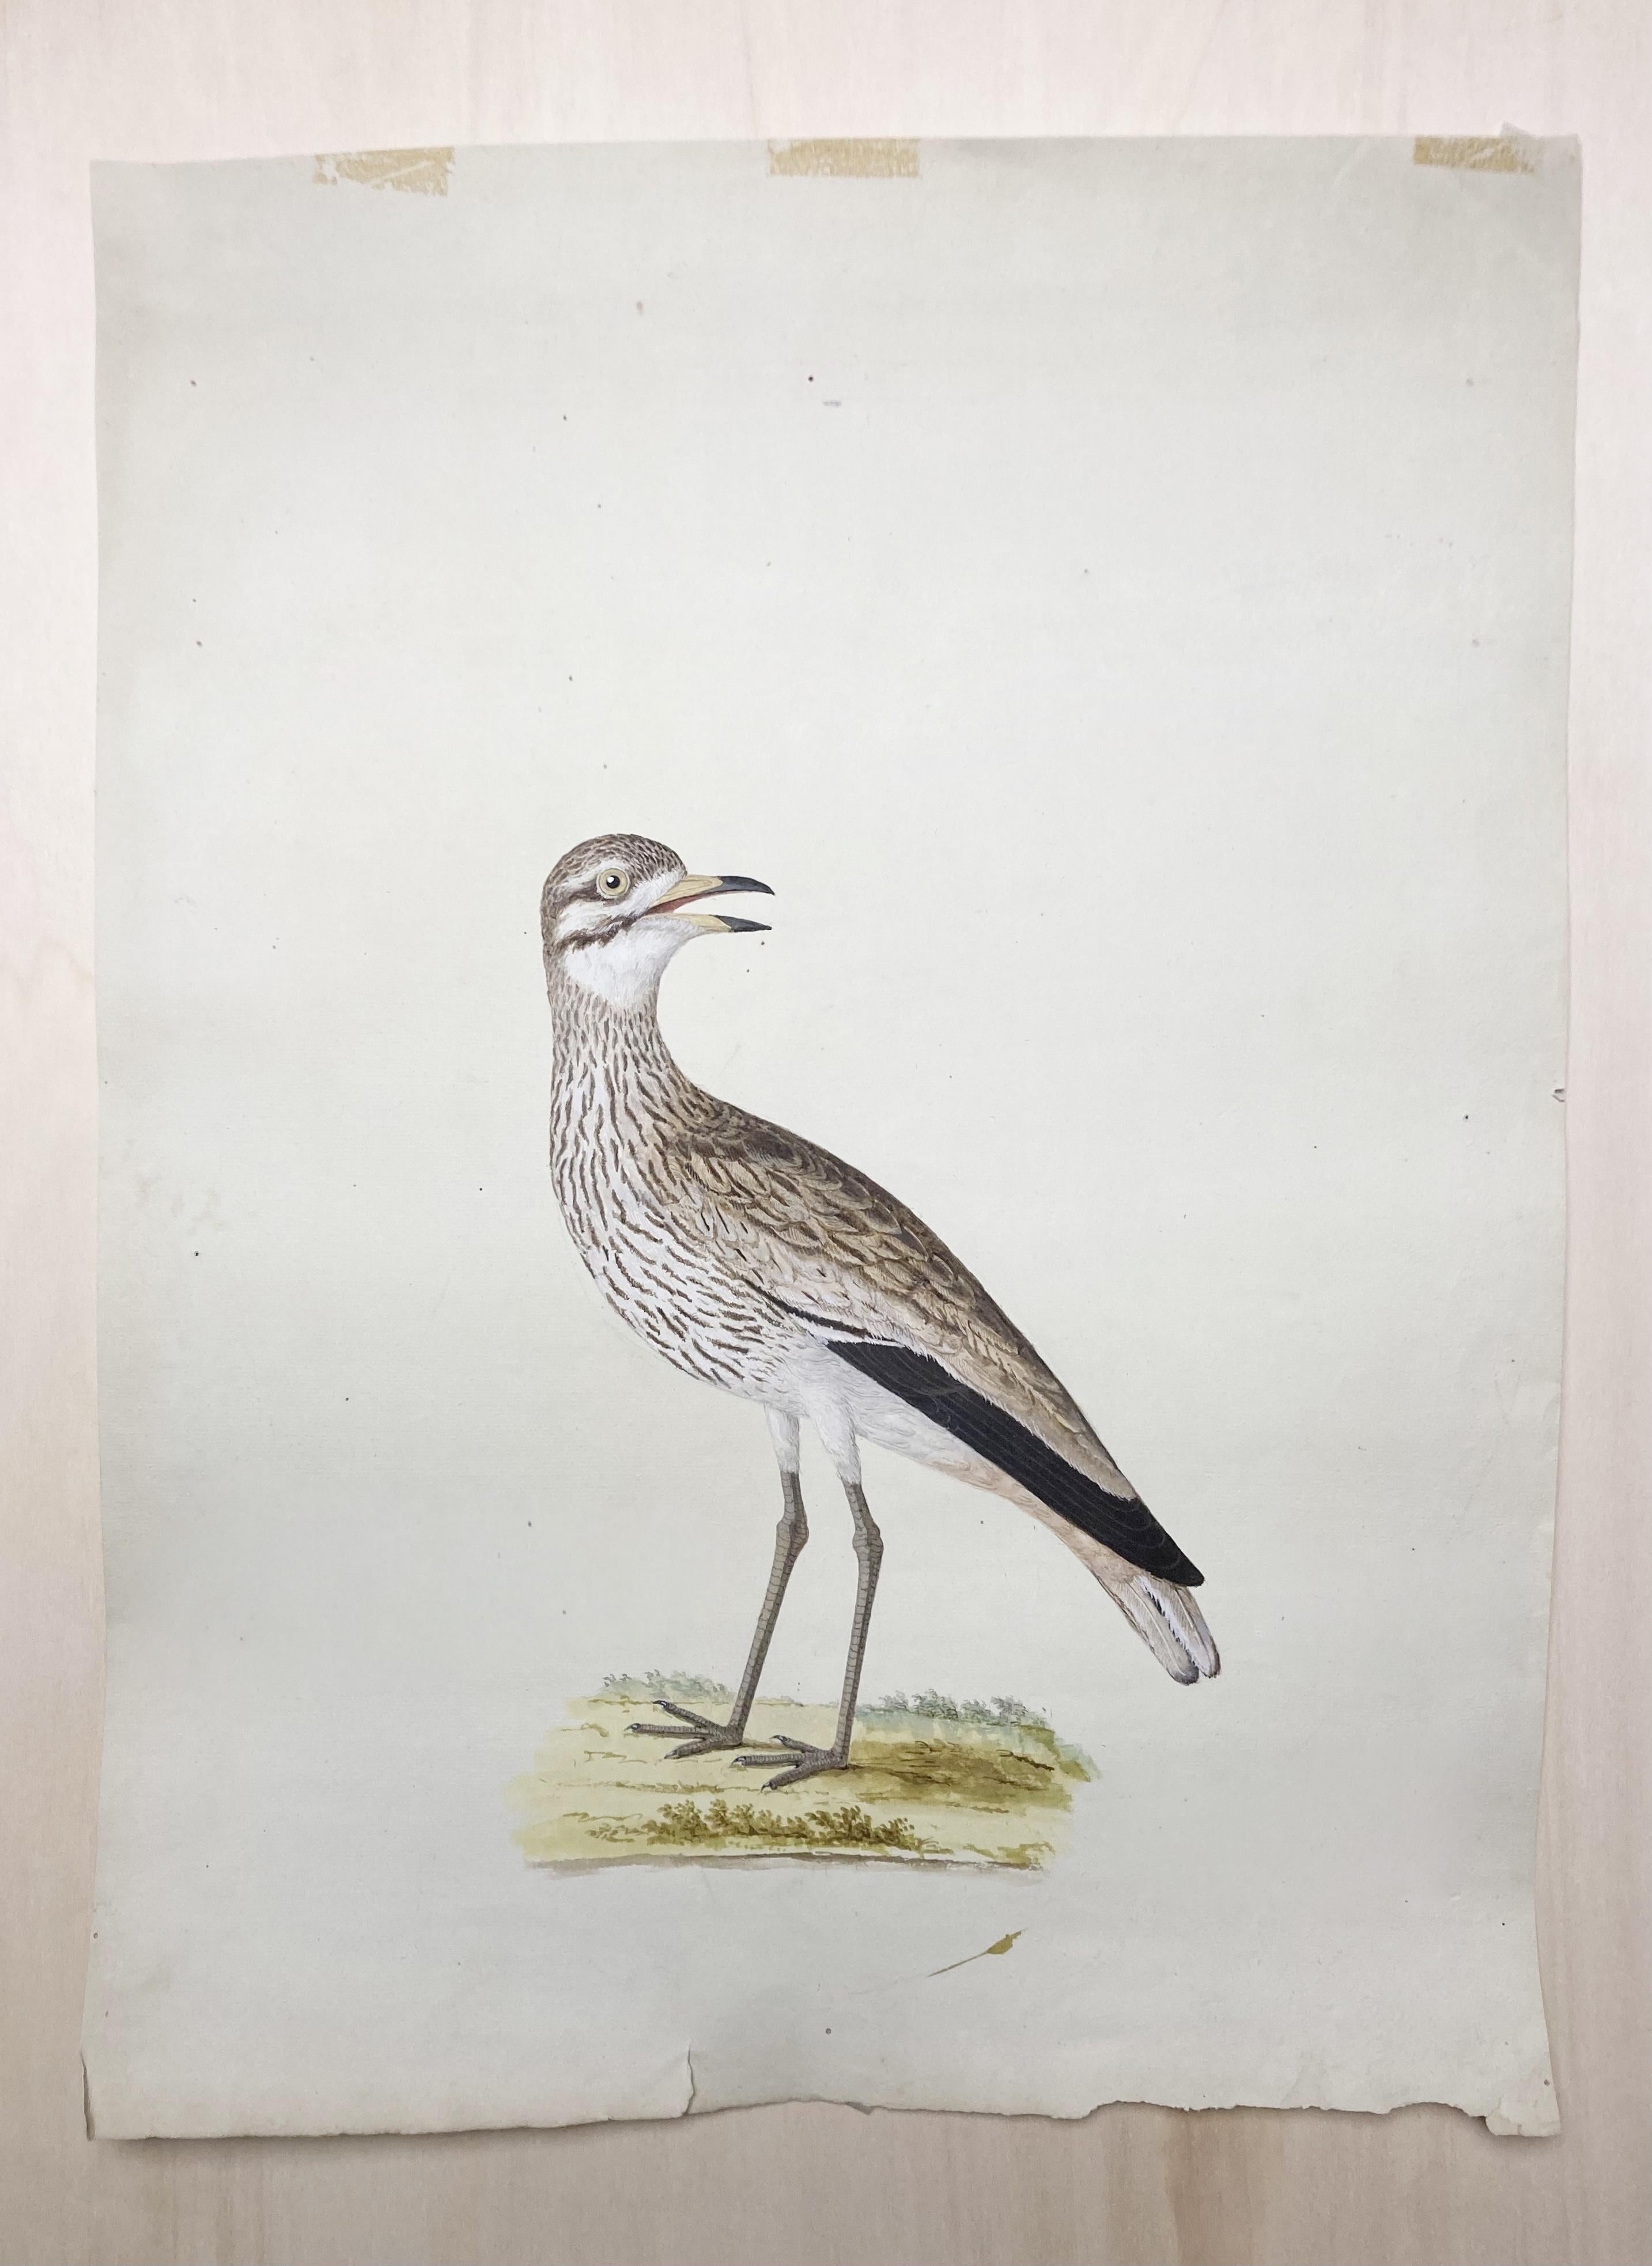 Peter Paillou Animal Art – Wildtierzeichnung eines erleuchteten Malers von grauen und weißen Vögeln